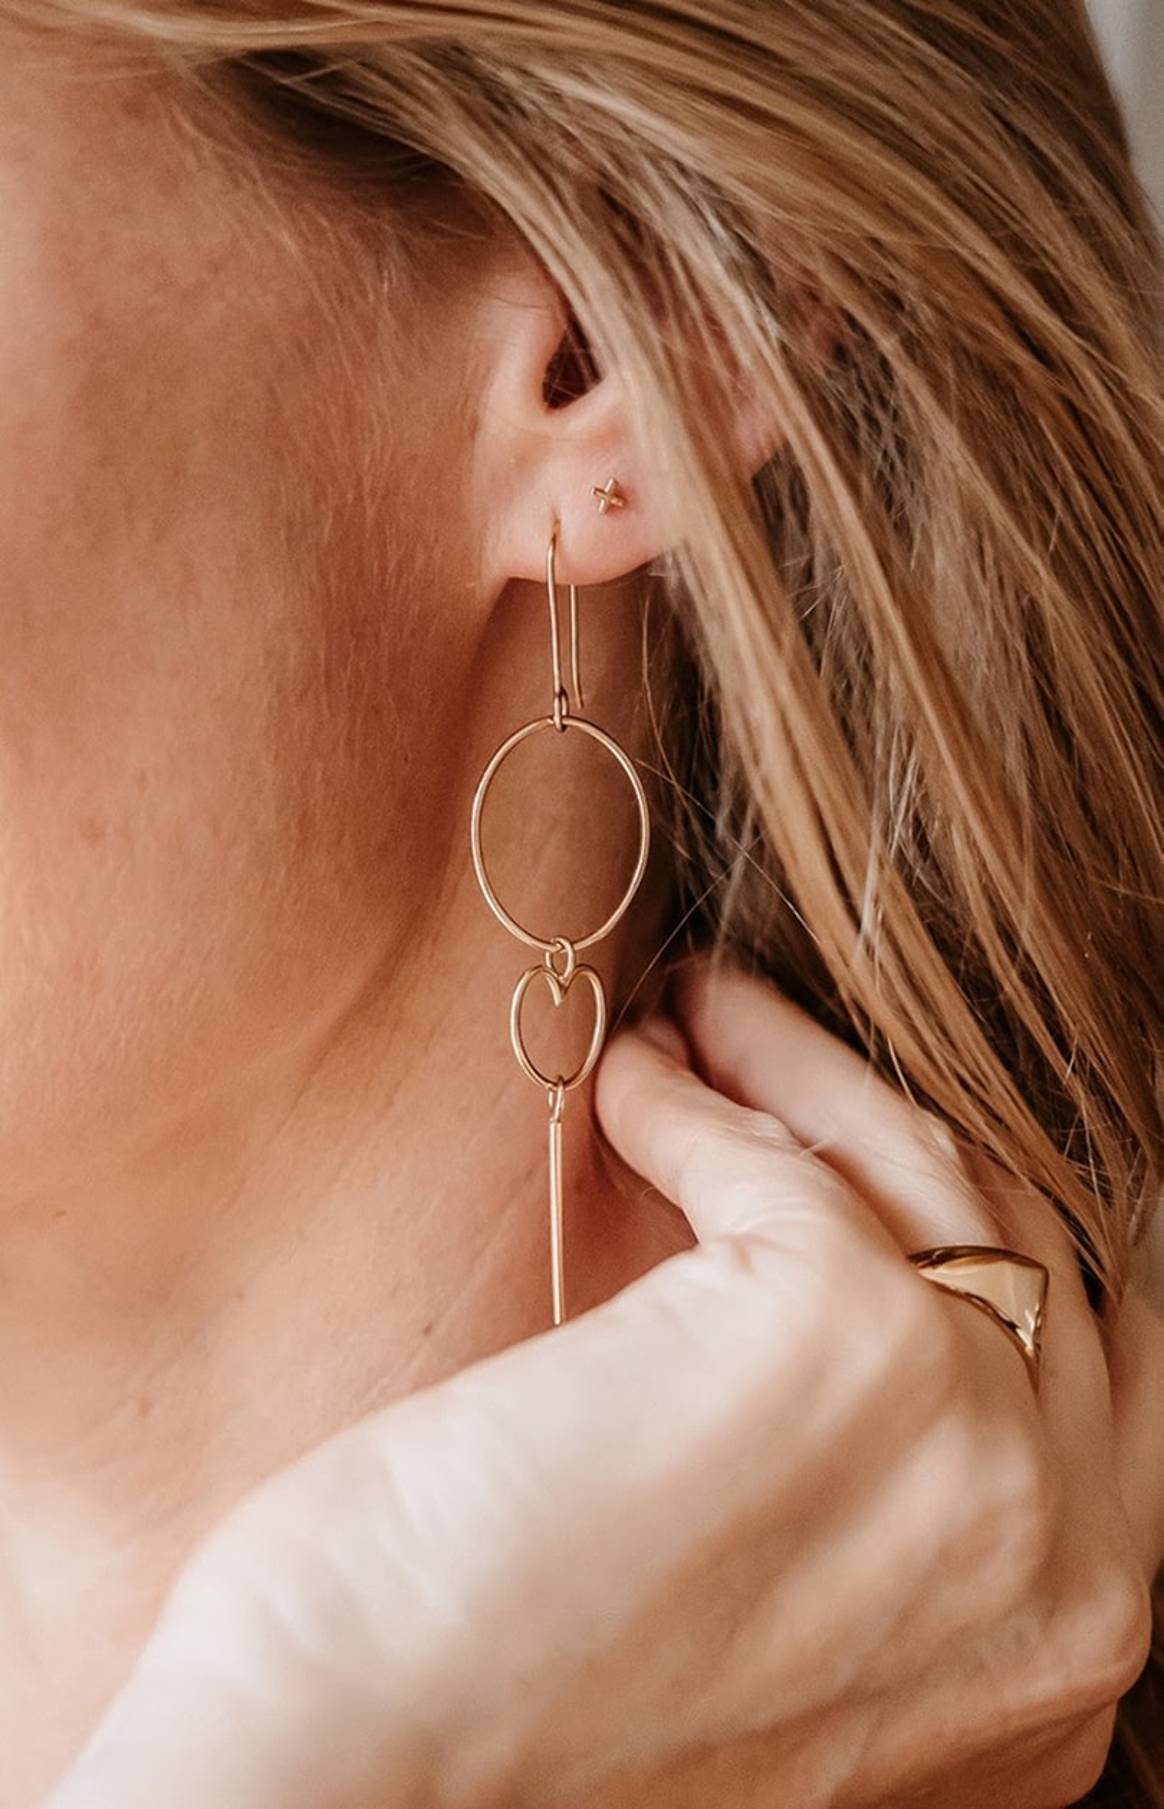 MAMALOVES viert 5 jarig bestaan met lancering Signature Earrings